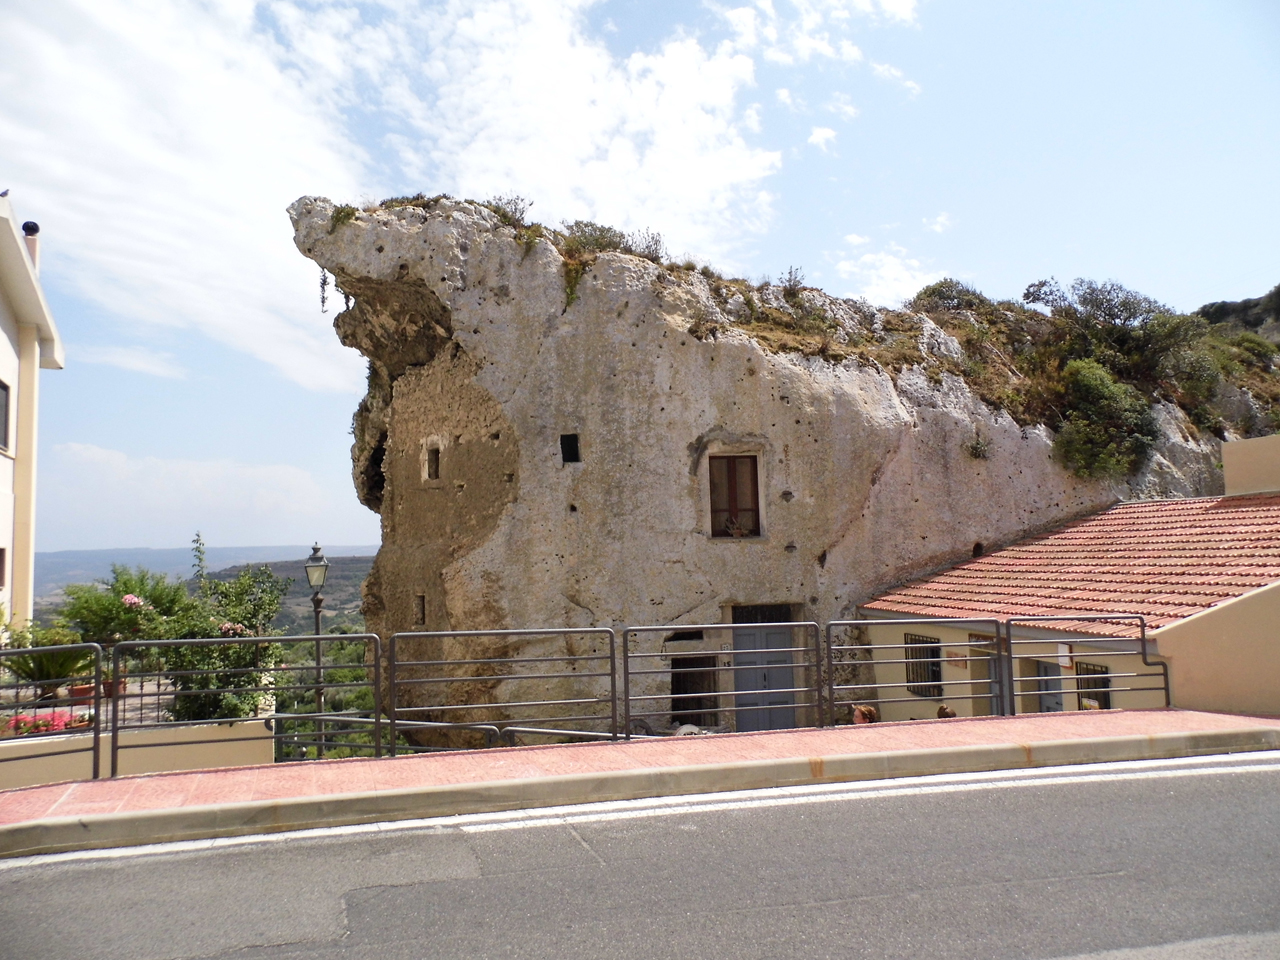 Domus di Via Nazionale (Tomba a domus de janas, area ad uso funerario) - Sedini (SS)  (Età neo-eneolitica)